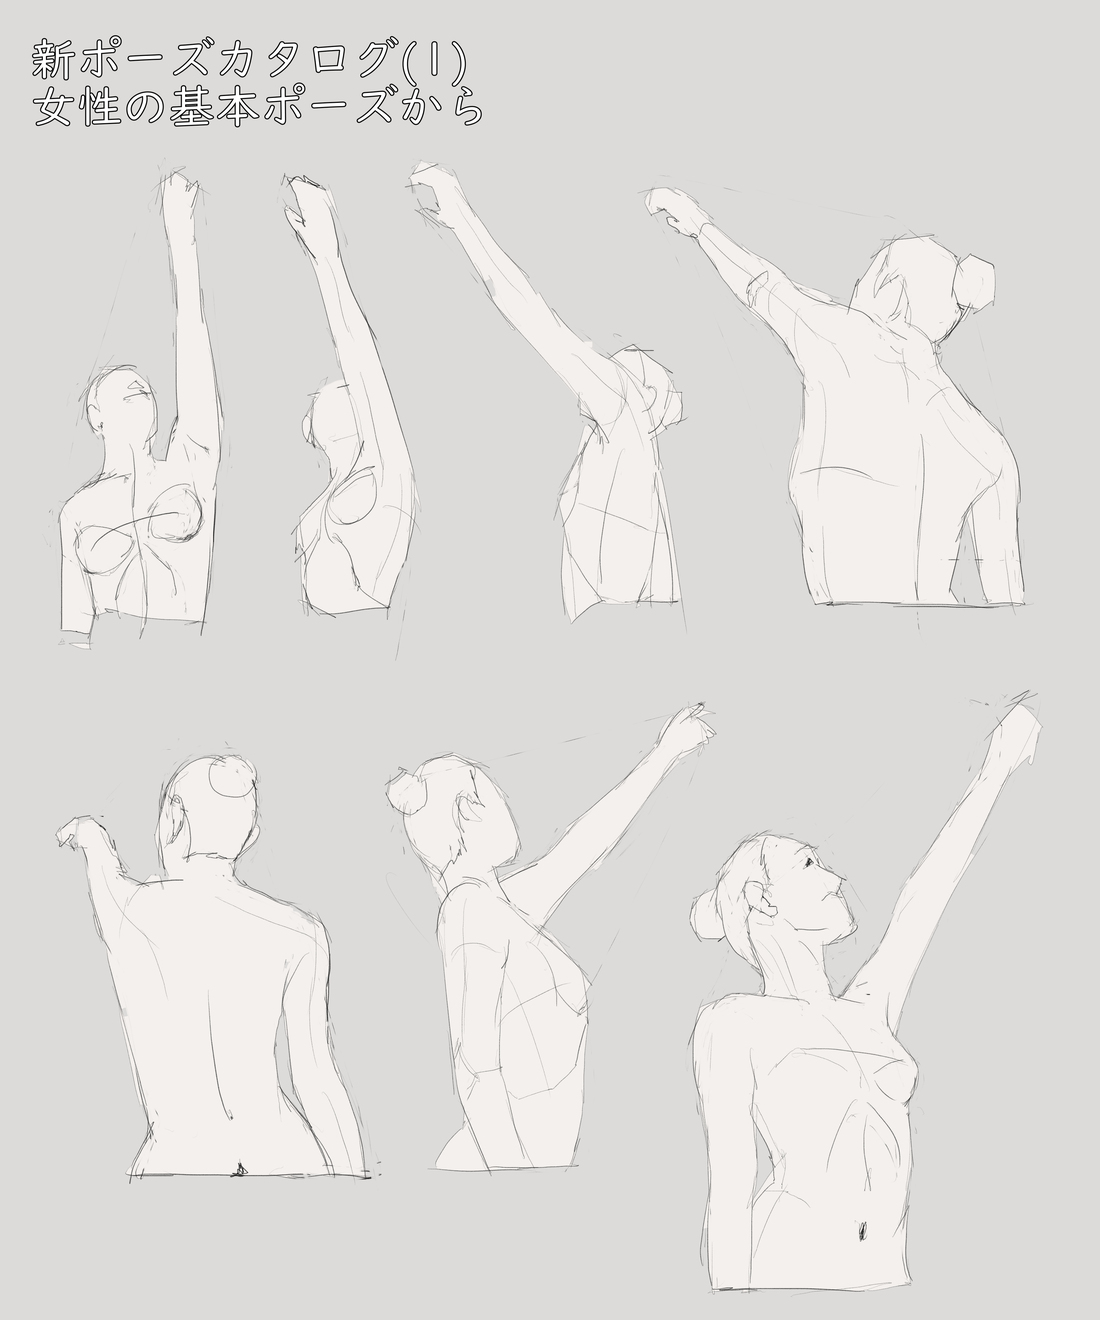 ミリタリーな兵器 人 他の色々な物を描くためのブログ マール社の新ポーズカタログ １から女性の体の模写 その５ 片手を高くかかげから腕を上げた胸郭から腕のポーズをスケッチする